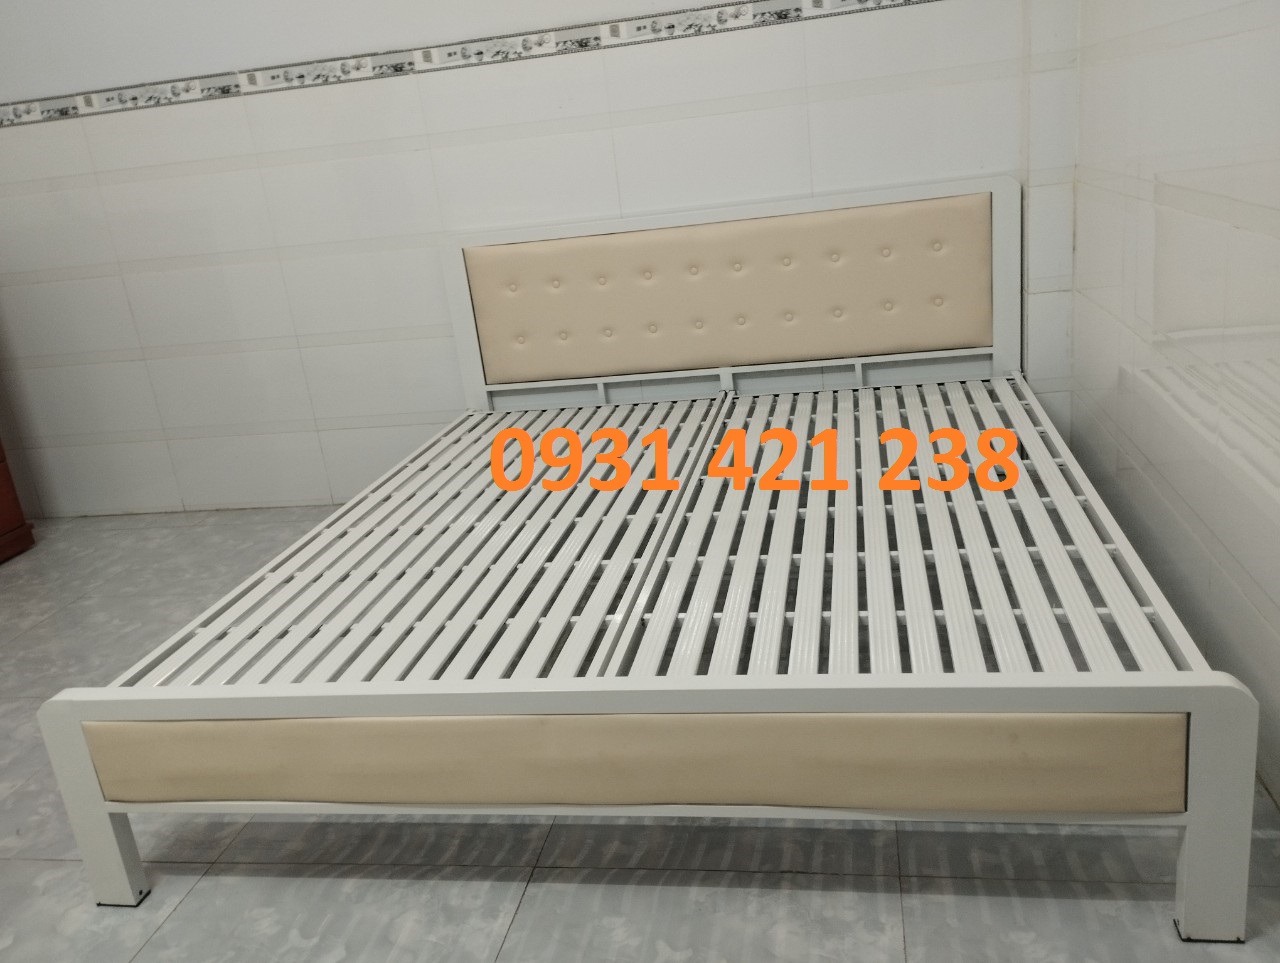 giường sắt đơn- giường gia đình sắt hộp 4x8 Cứng Cáp, giường ngủ sắt giá rẻ,giao hàng và lắp ráp tận nhà